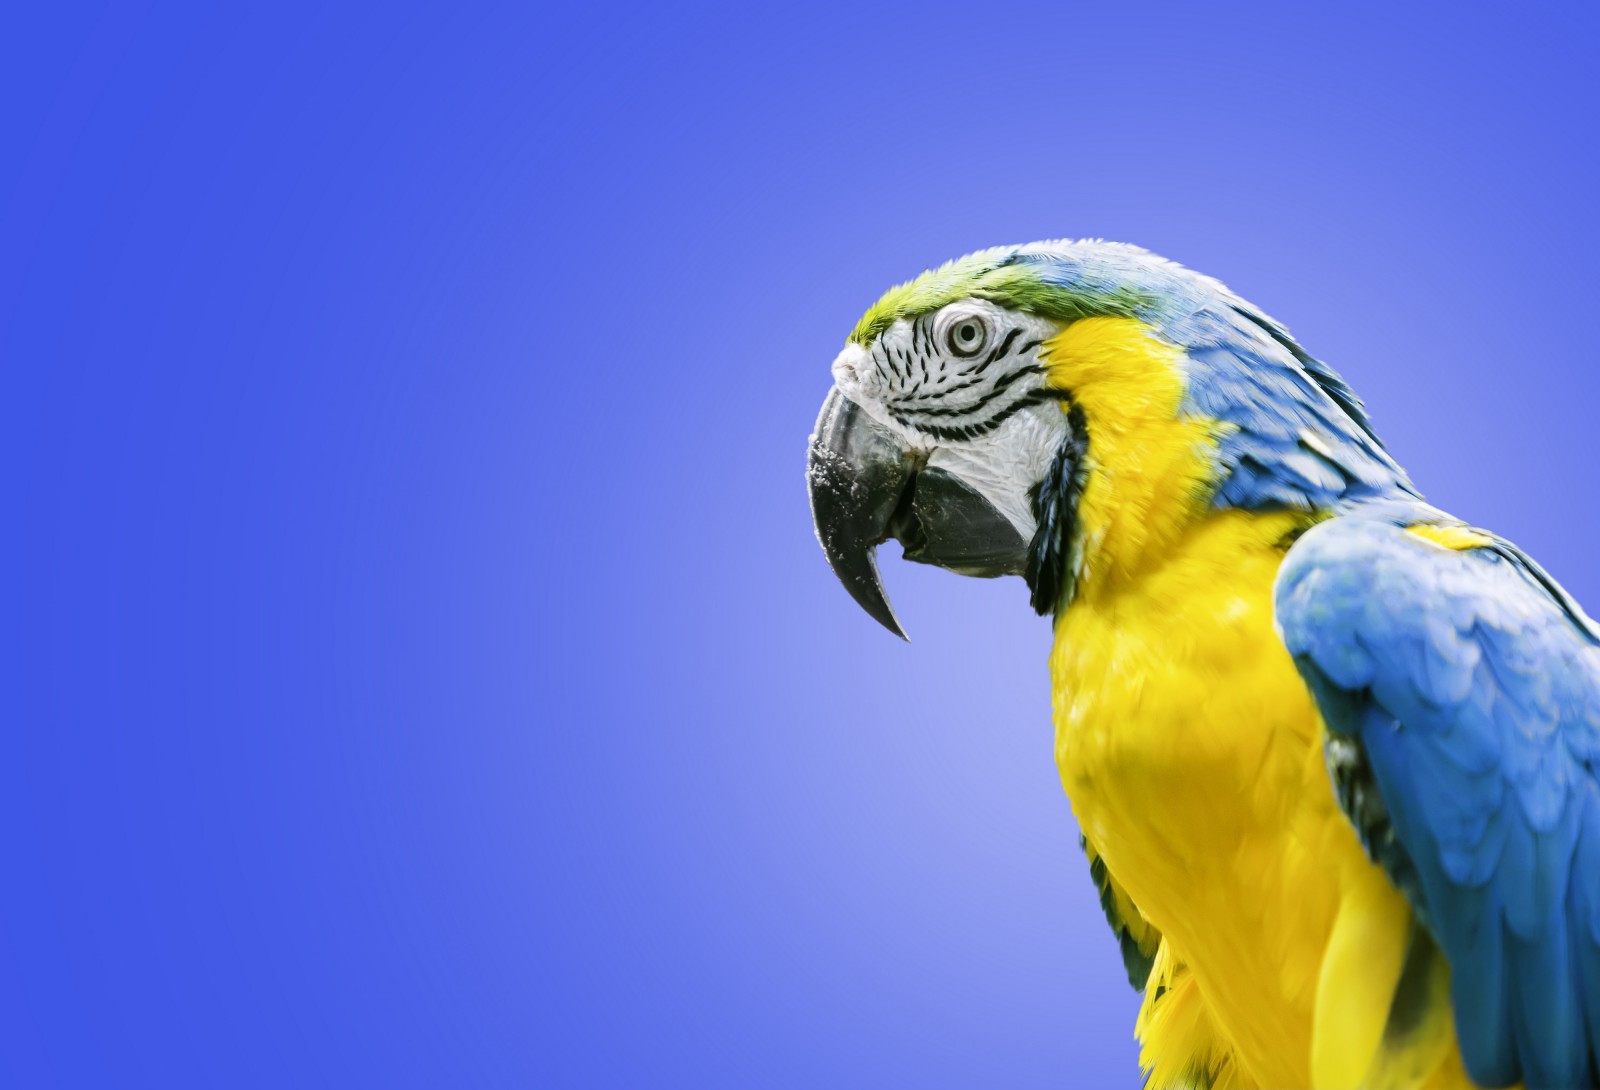 นก, นกแก้ว, ara, มาคอว์สีฟ้าและสีเหลือง